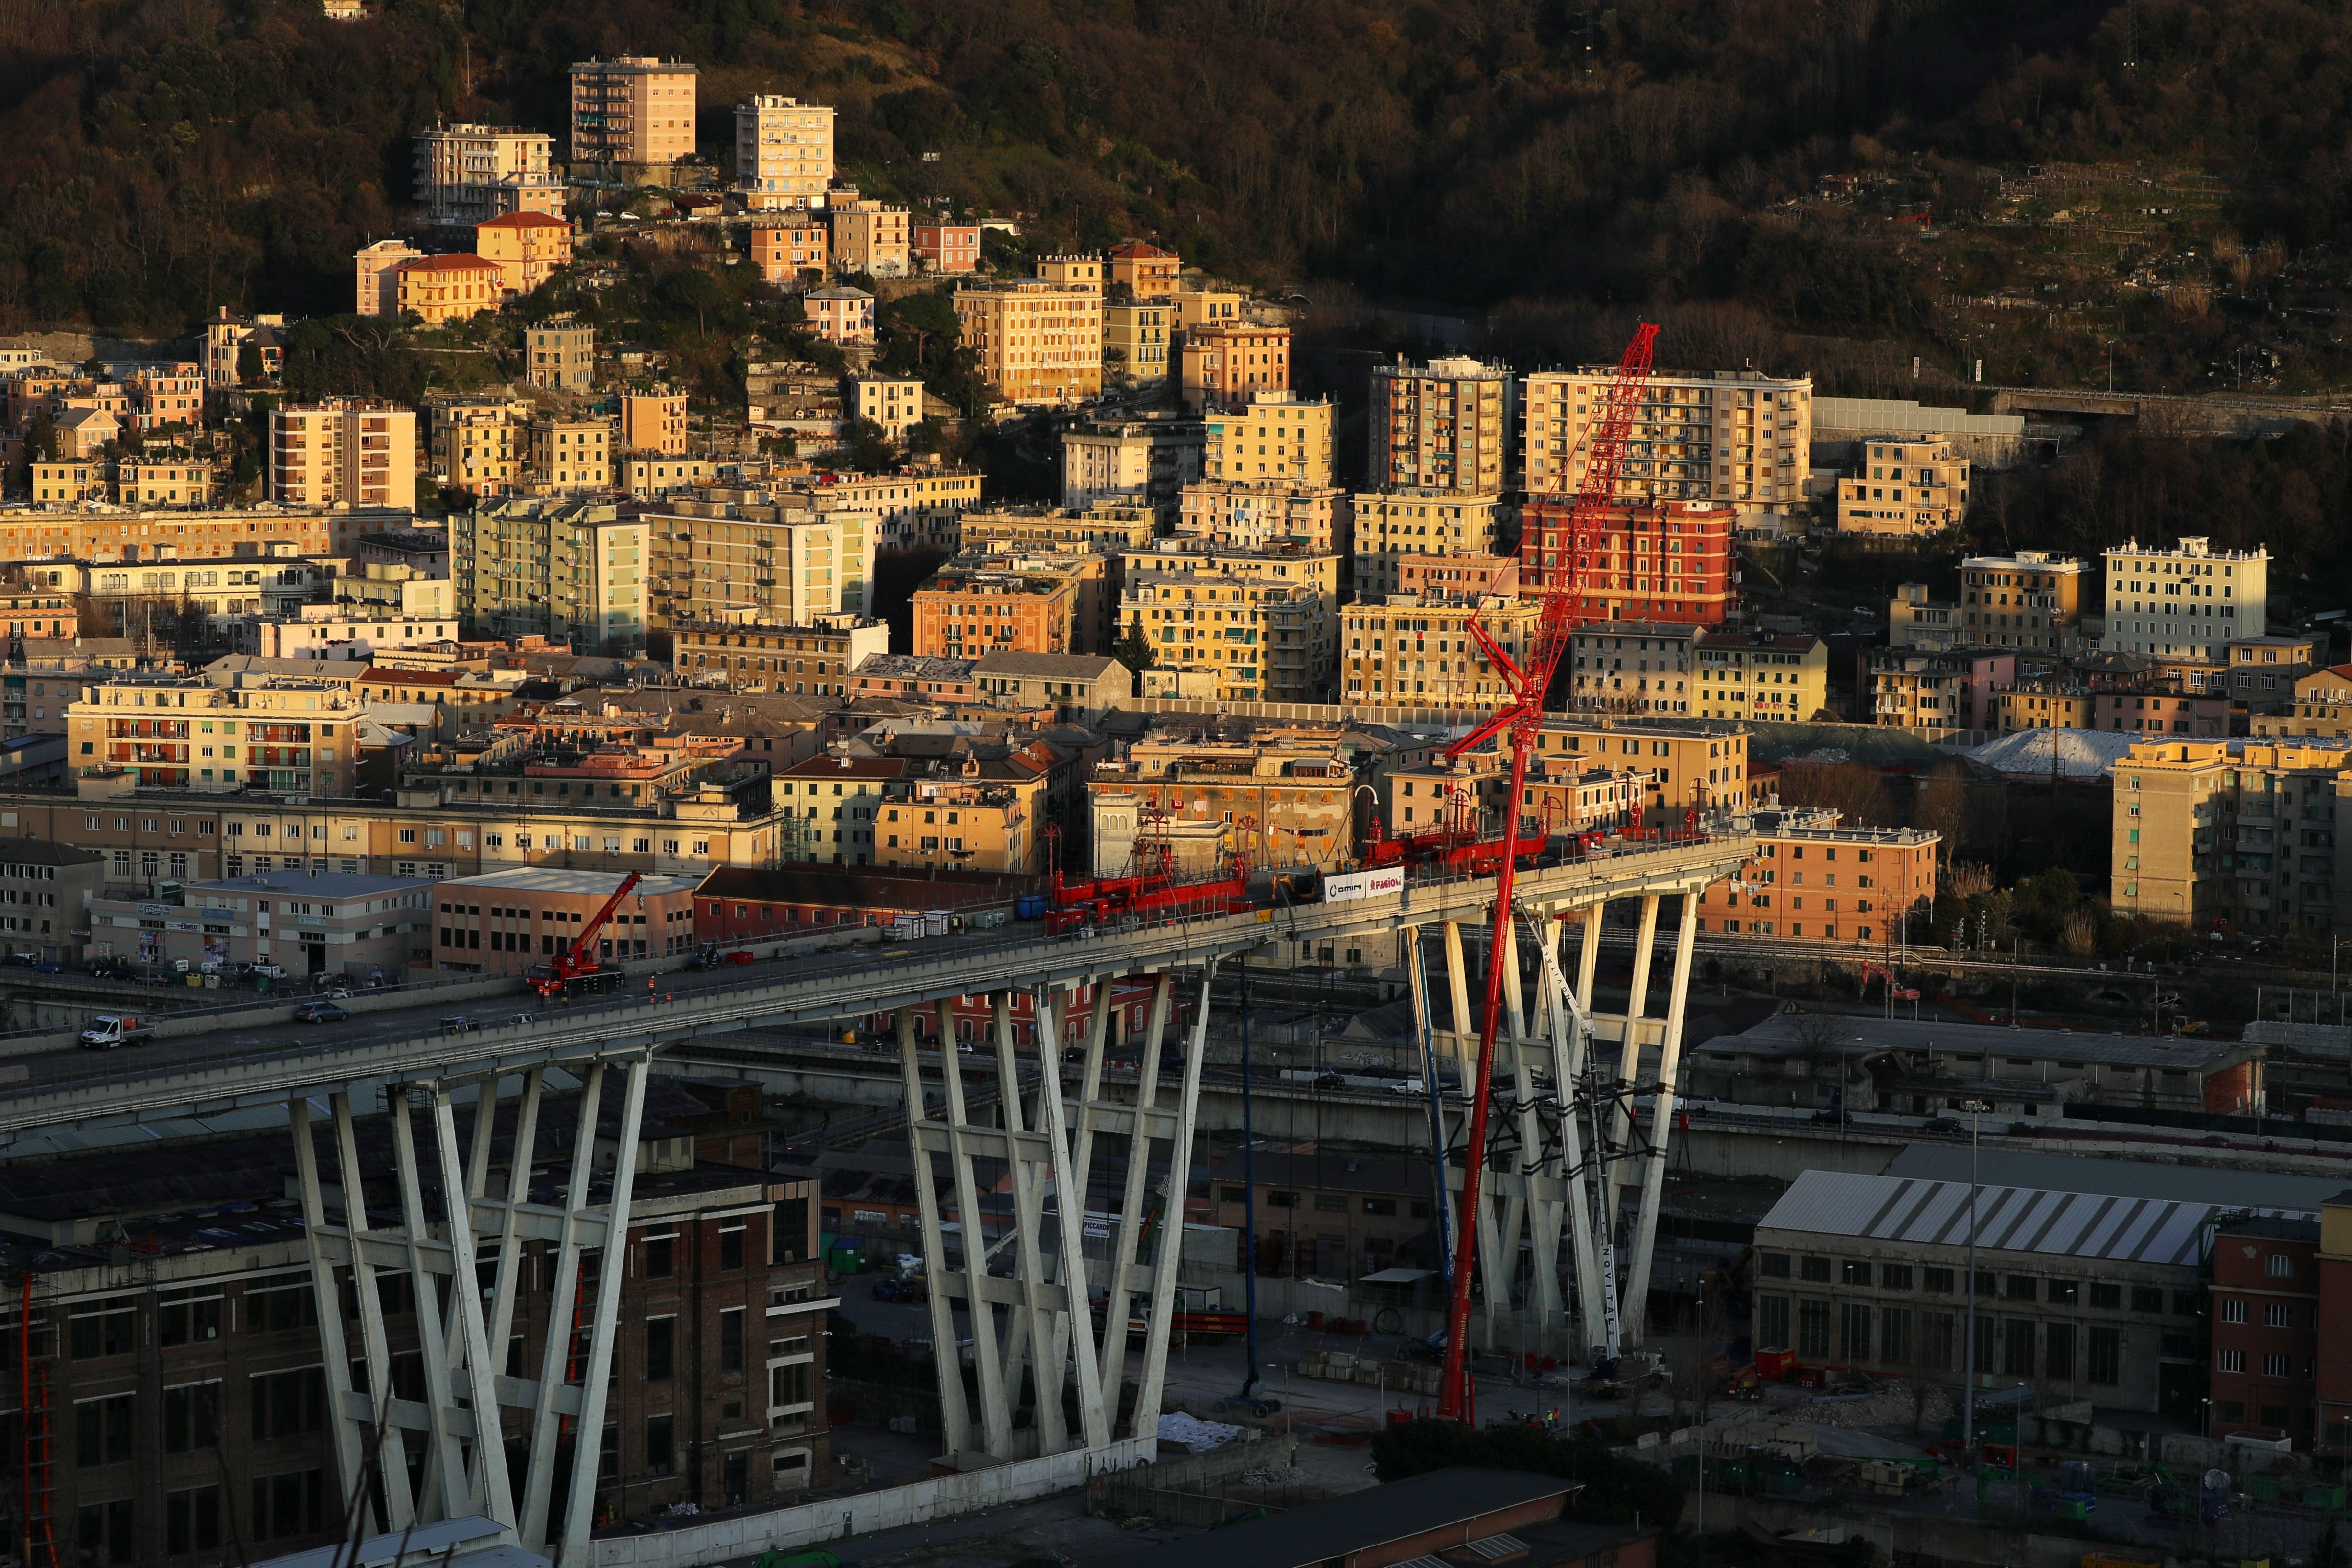 Обвал моста в Генуе: смертоносную переправу начали сносить (фото)